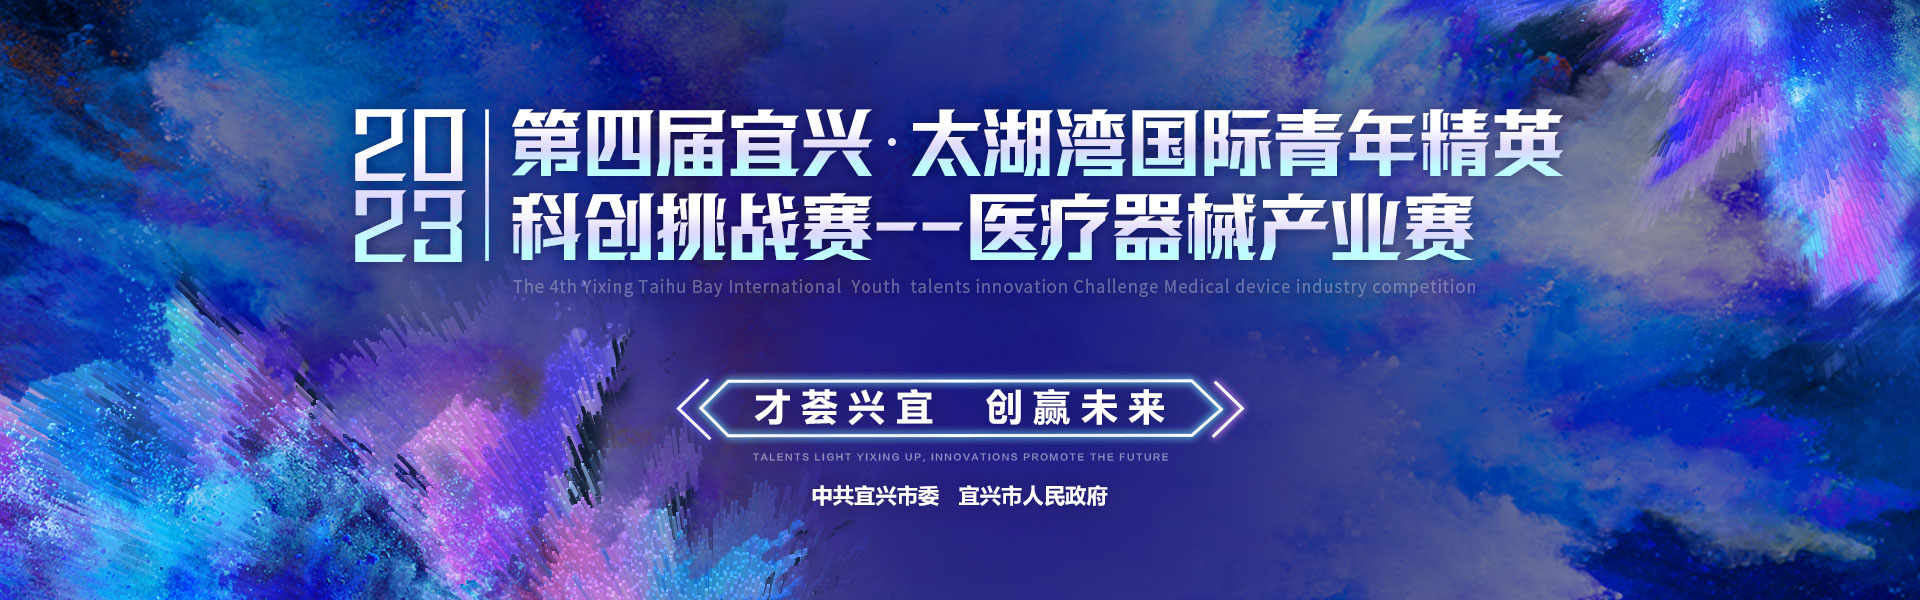 第四届中国宜兴太湖湾国际青年精英科创挑战赛—医疗器械产业赛